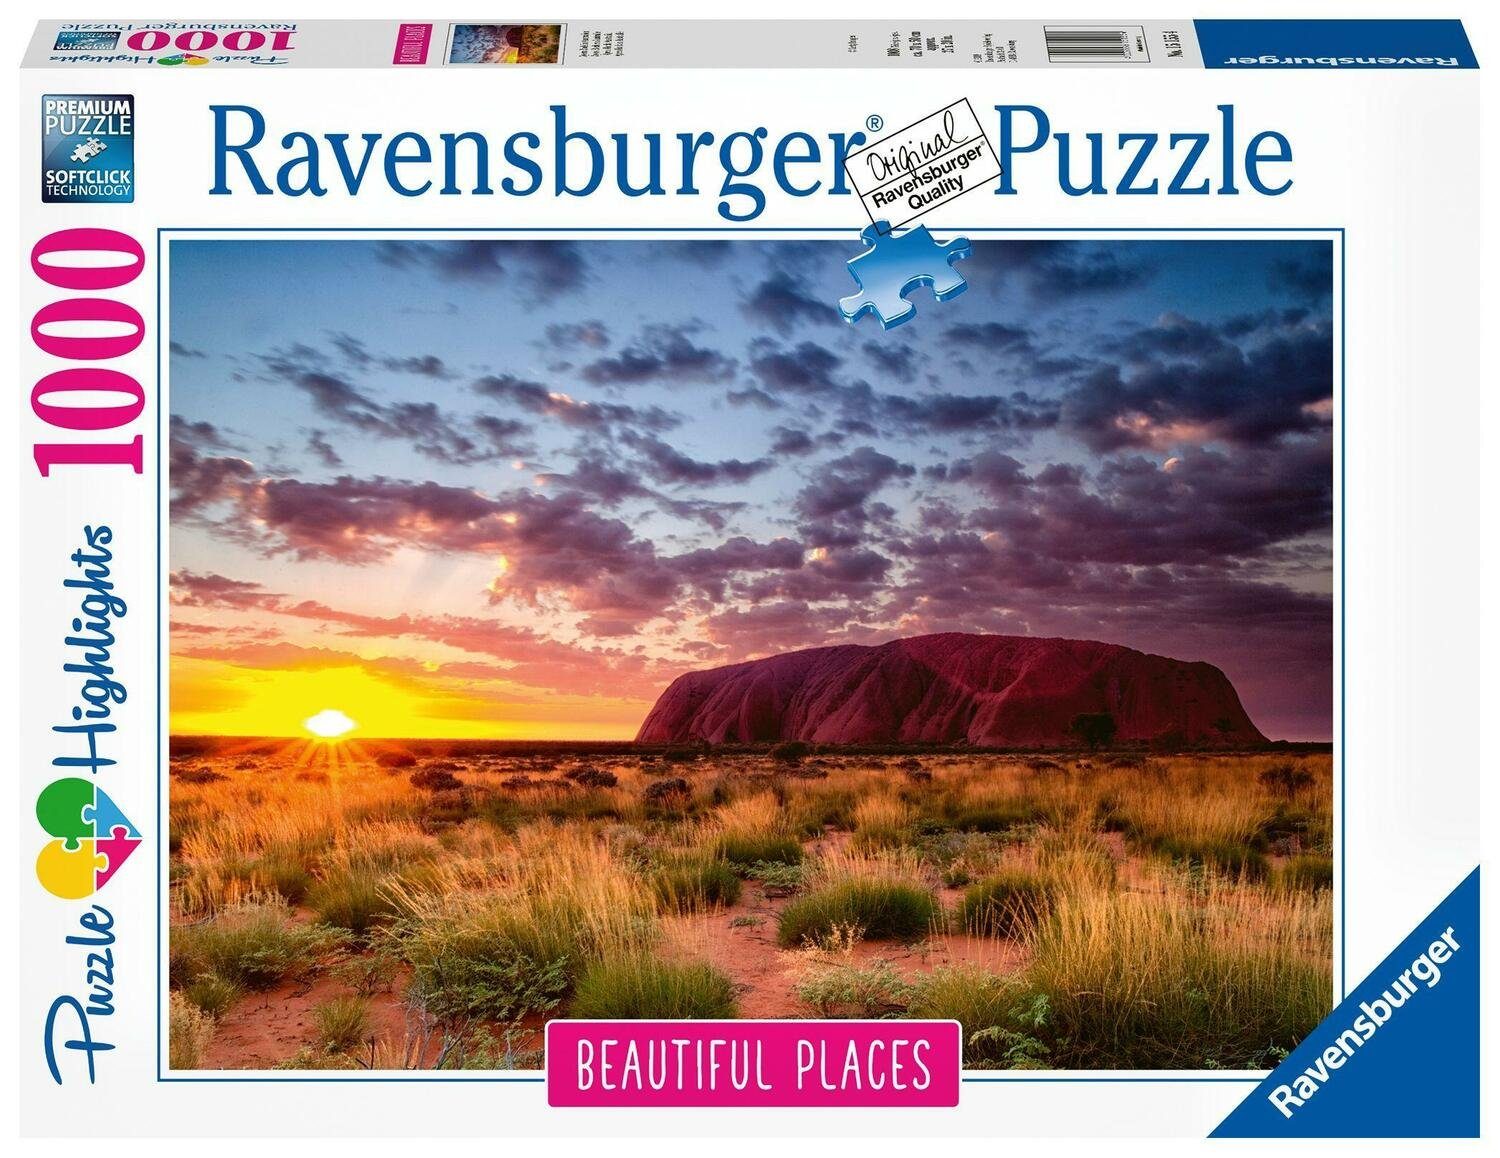 Teile, Ayers Rock Puzzleteile 1000 in 1000 Australien. Puzzle Ravensburger Puzzle